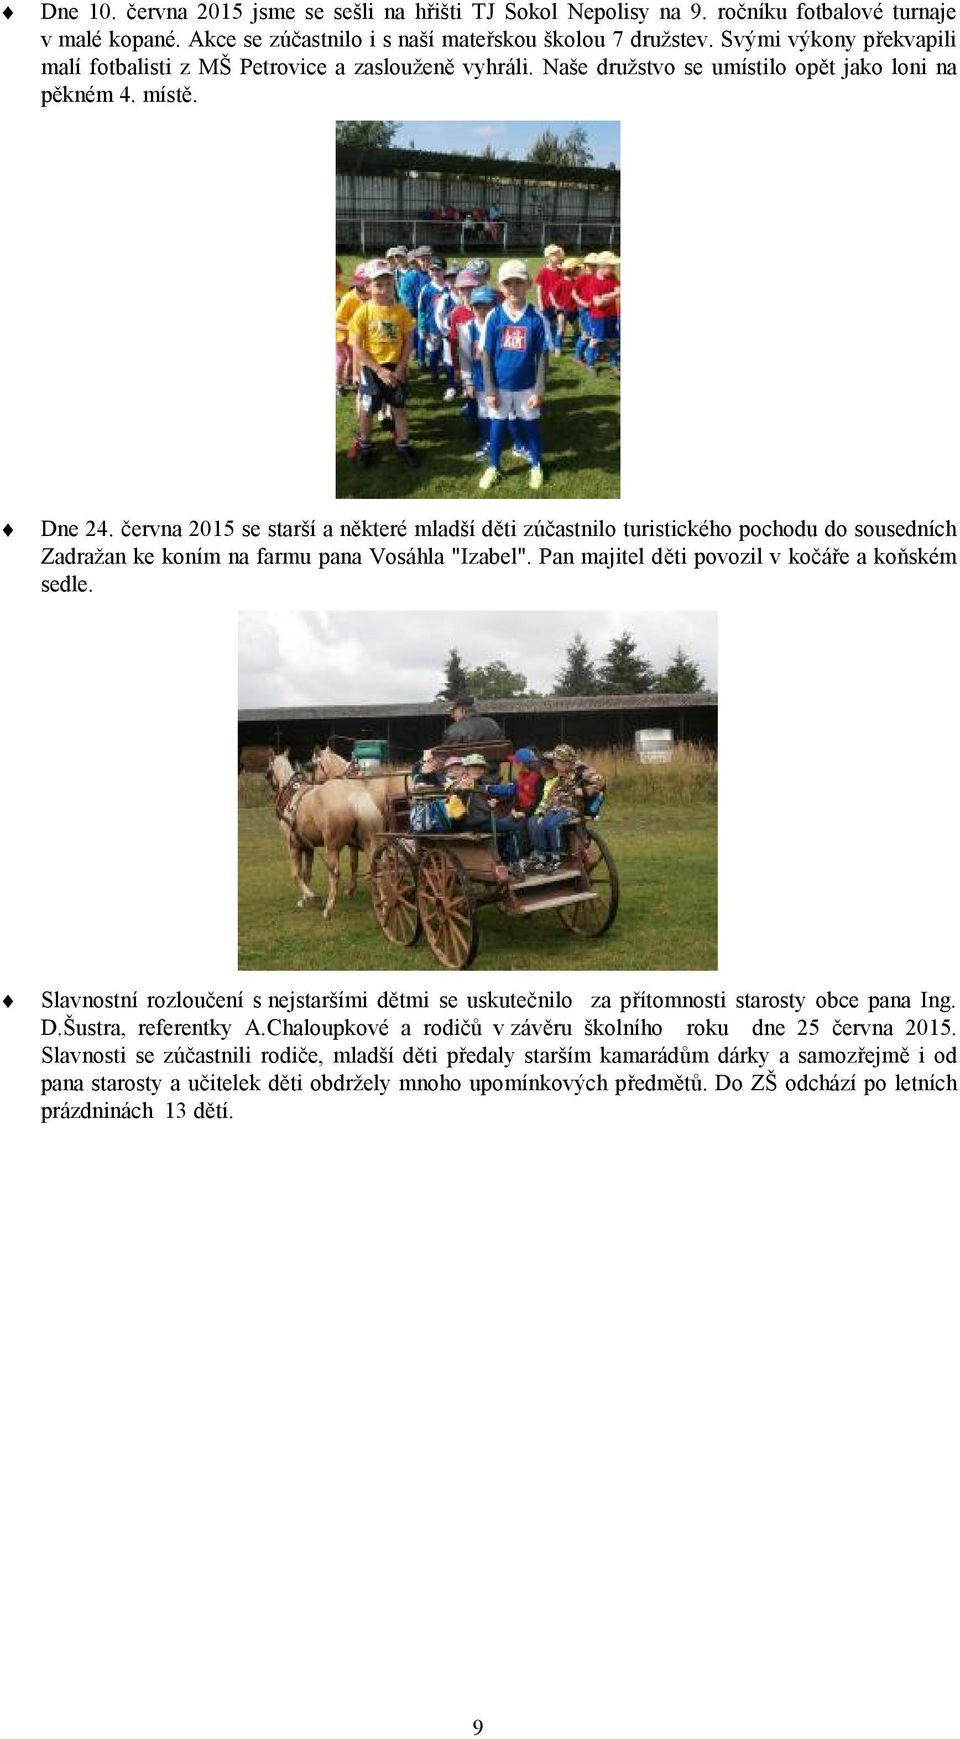 června 2015 se starší a některé mladší děti zúčastnilo turistického pochodu do sousedních Zadražan ke koním na farmu pana Vosáhla "Izabel". Pan majitel děti povozil v kočáře a koňském sedle.